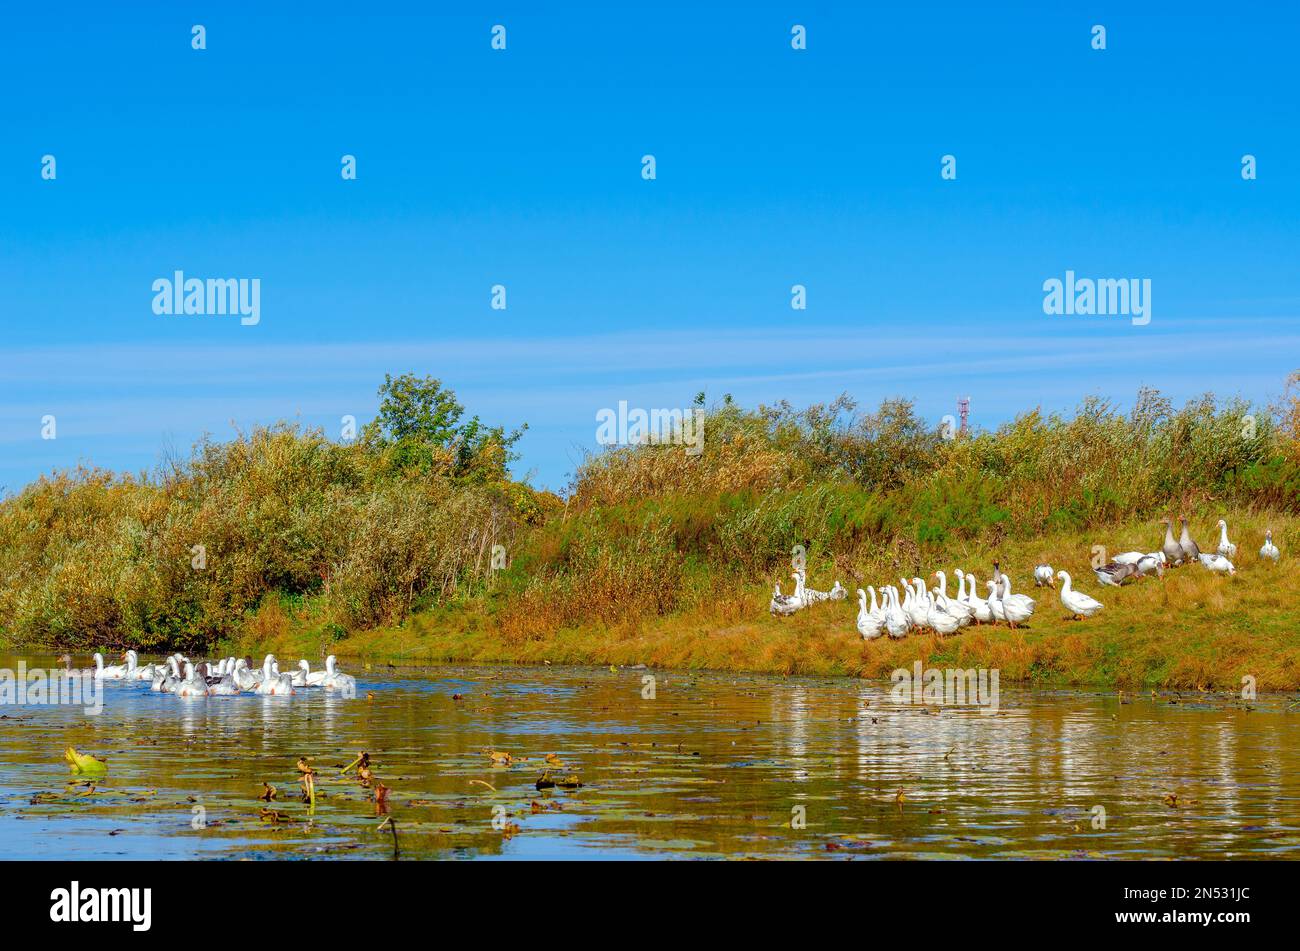 Un gregge di oche nuota attraverso l'acqua del fiume per gigli d'acqua gialli sullo sfondo di altri uccelli bianchi sulla riva verde con erba Foto Stock